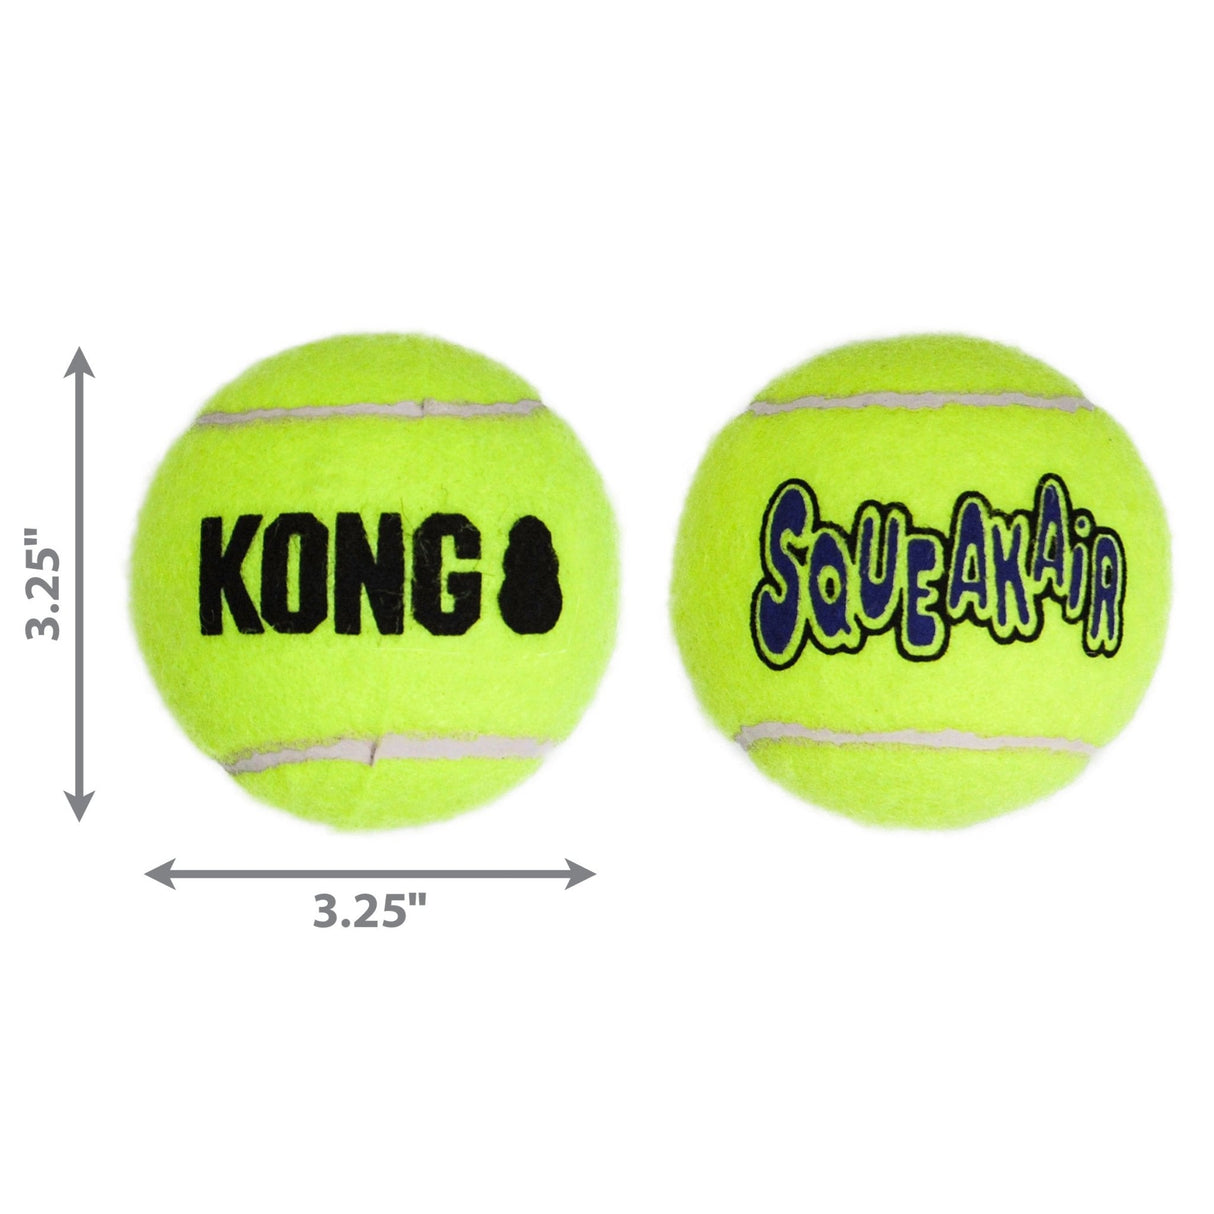 KONG Squeak Air Tennis Balls 3-Pack Dog Toy, Kong, Large